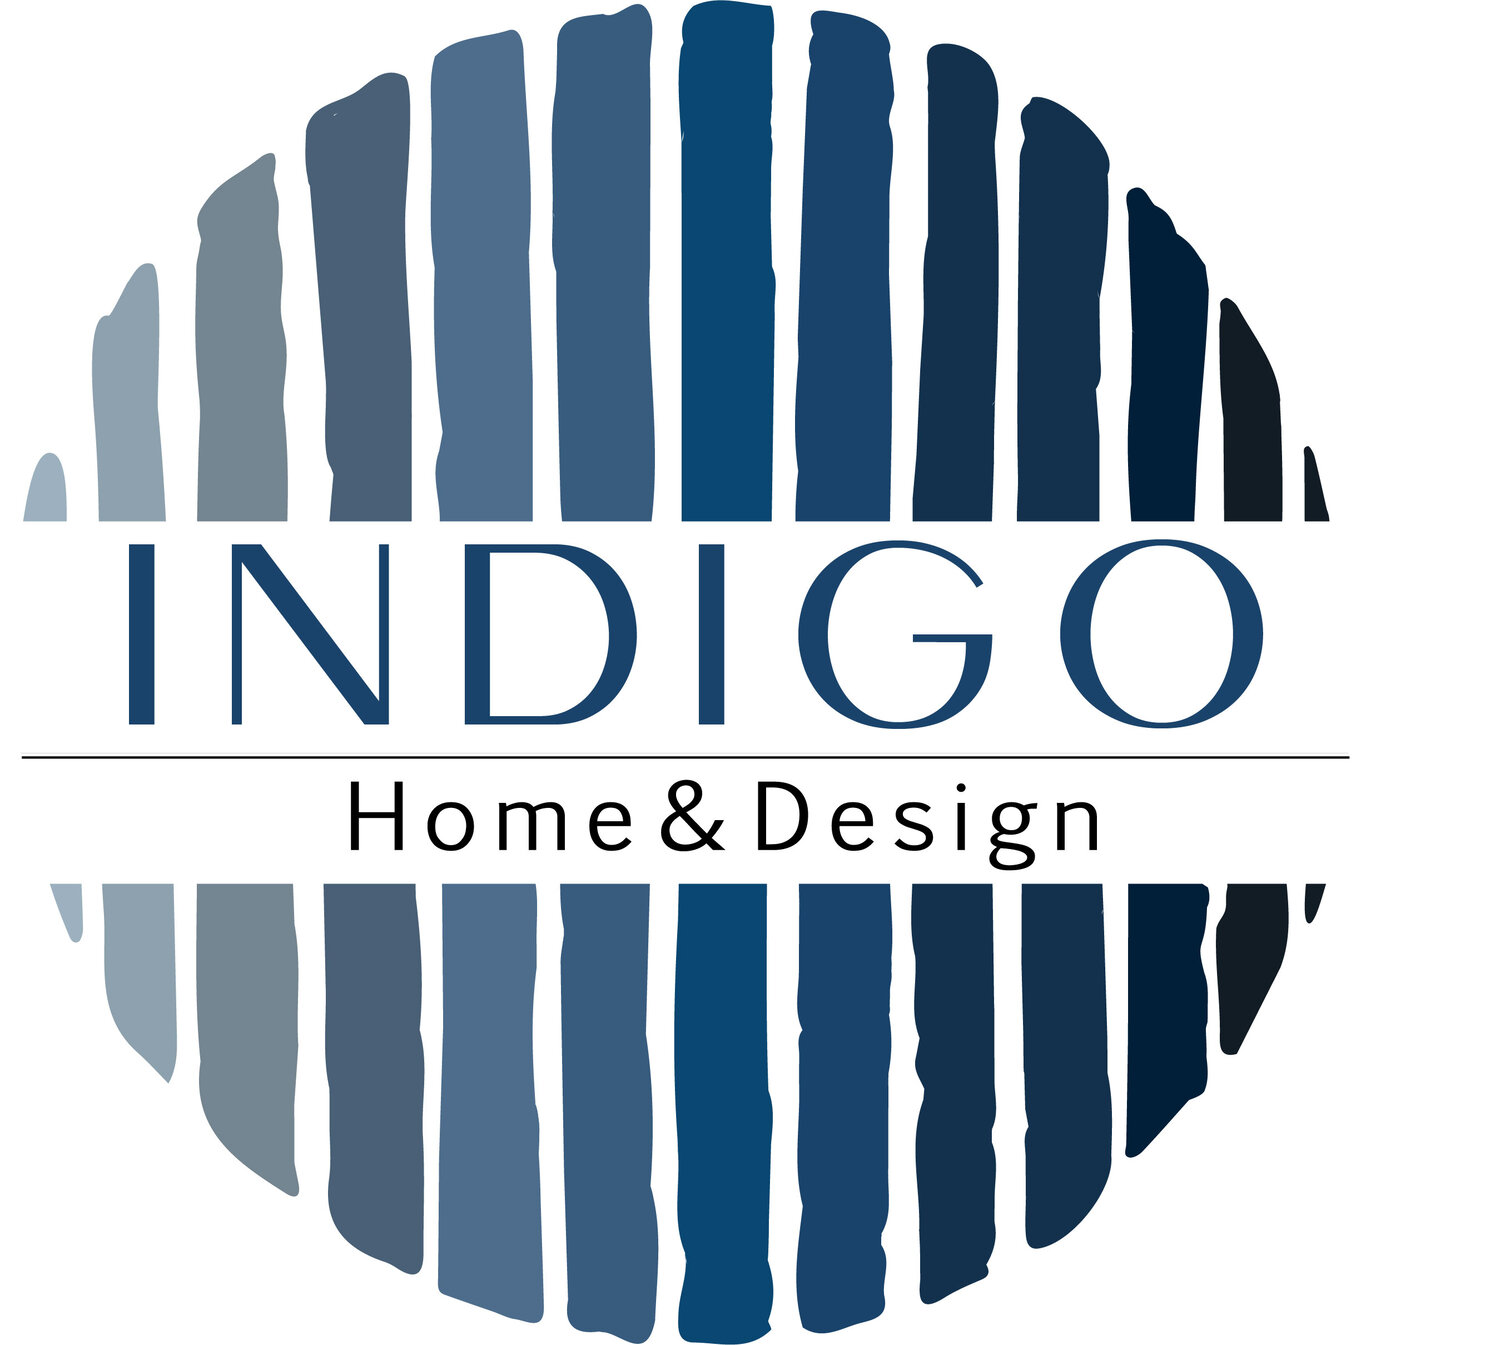 INDIGO Home & Design